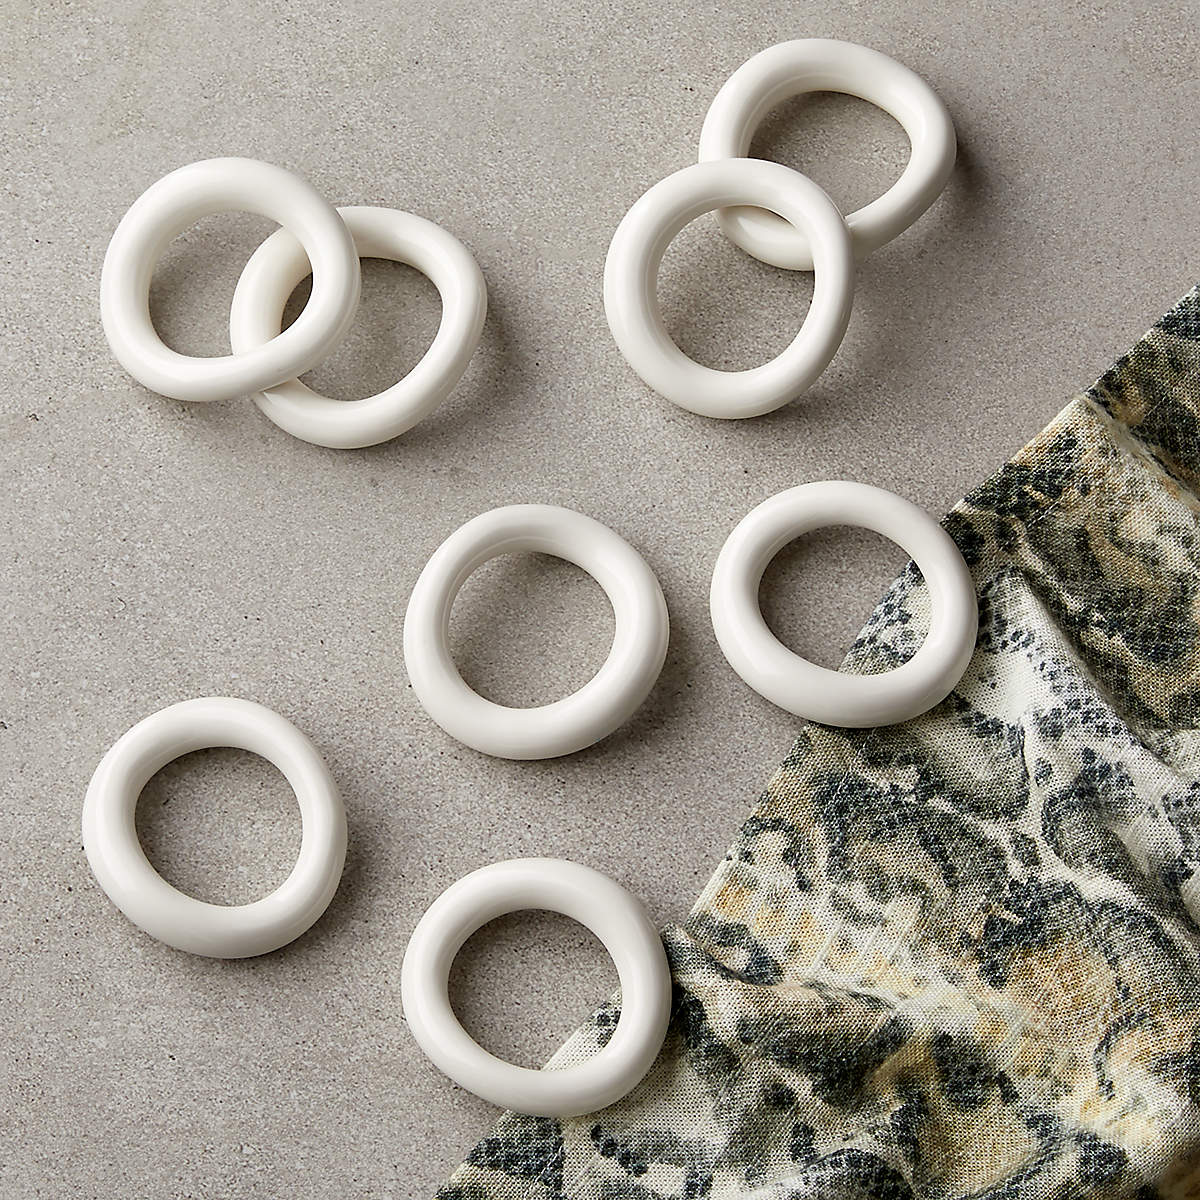 moore-shiny-white-porcelain-napkin-rings-set-of-8.jpg